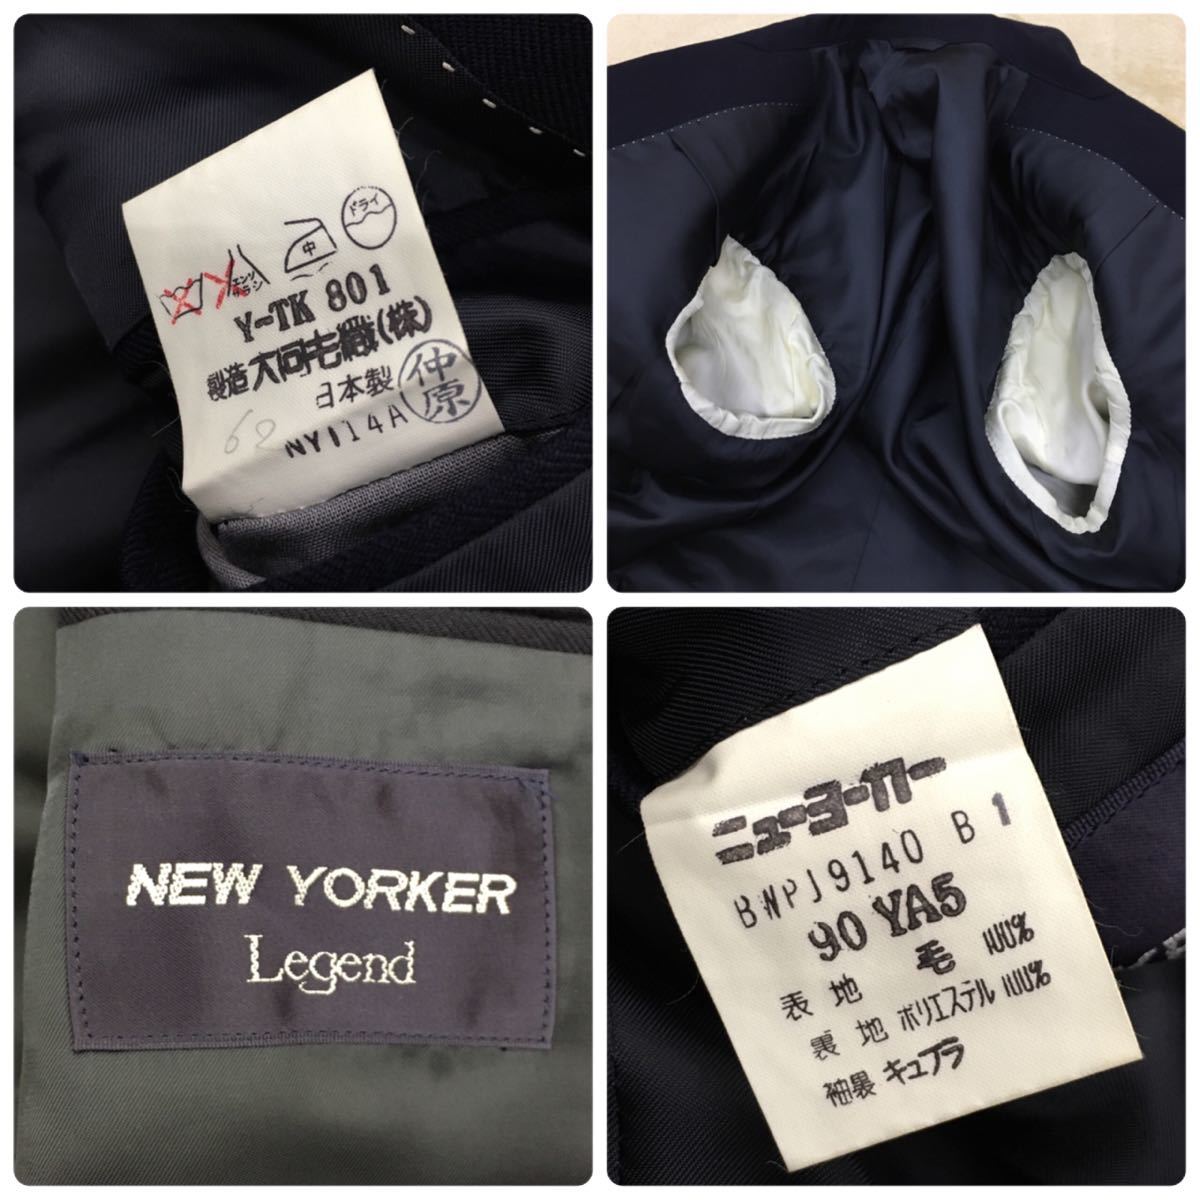 NEW YORKER Legend ニューヨーカー ニューウール ブレザー ダブル ネイビー ジャケット 総裏 ツーベンツ メンズ サイズ90YA5 紺色